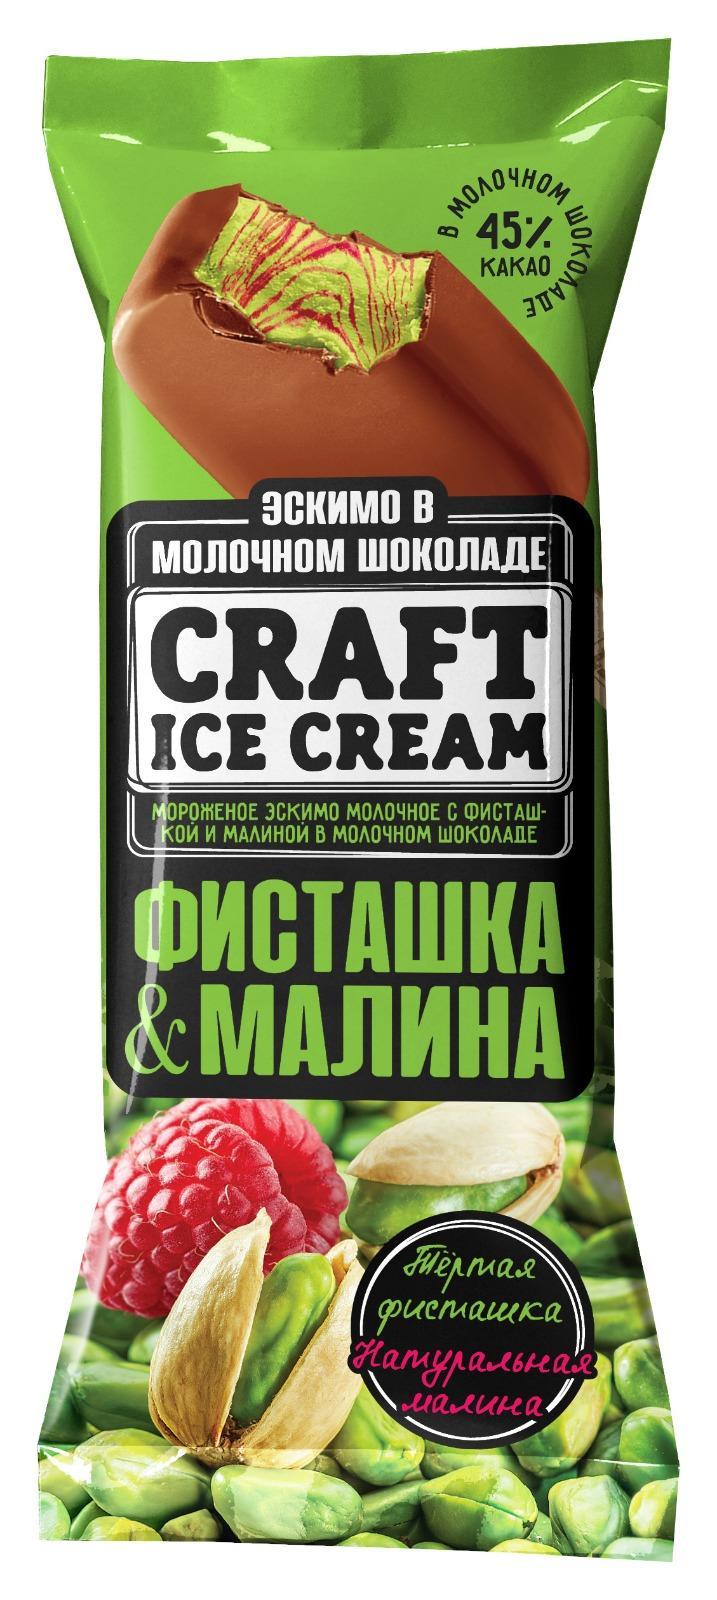 Мороженое Craft Ice Cream фисташка-малина в молочном шоколаде эскимо 80 гр., флоу-пак